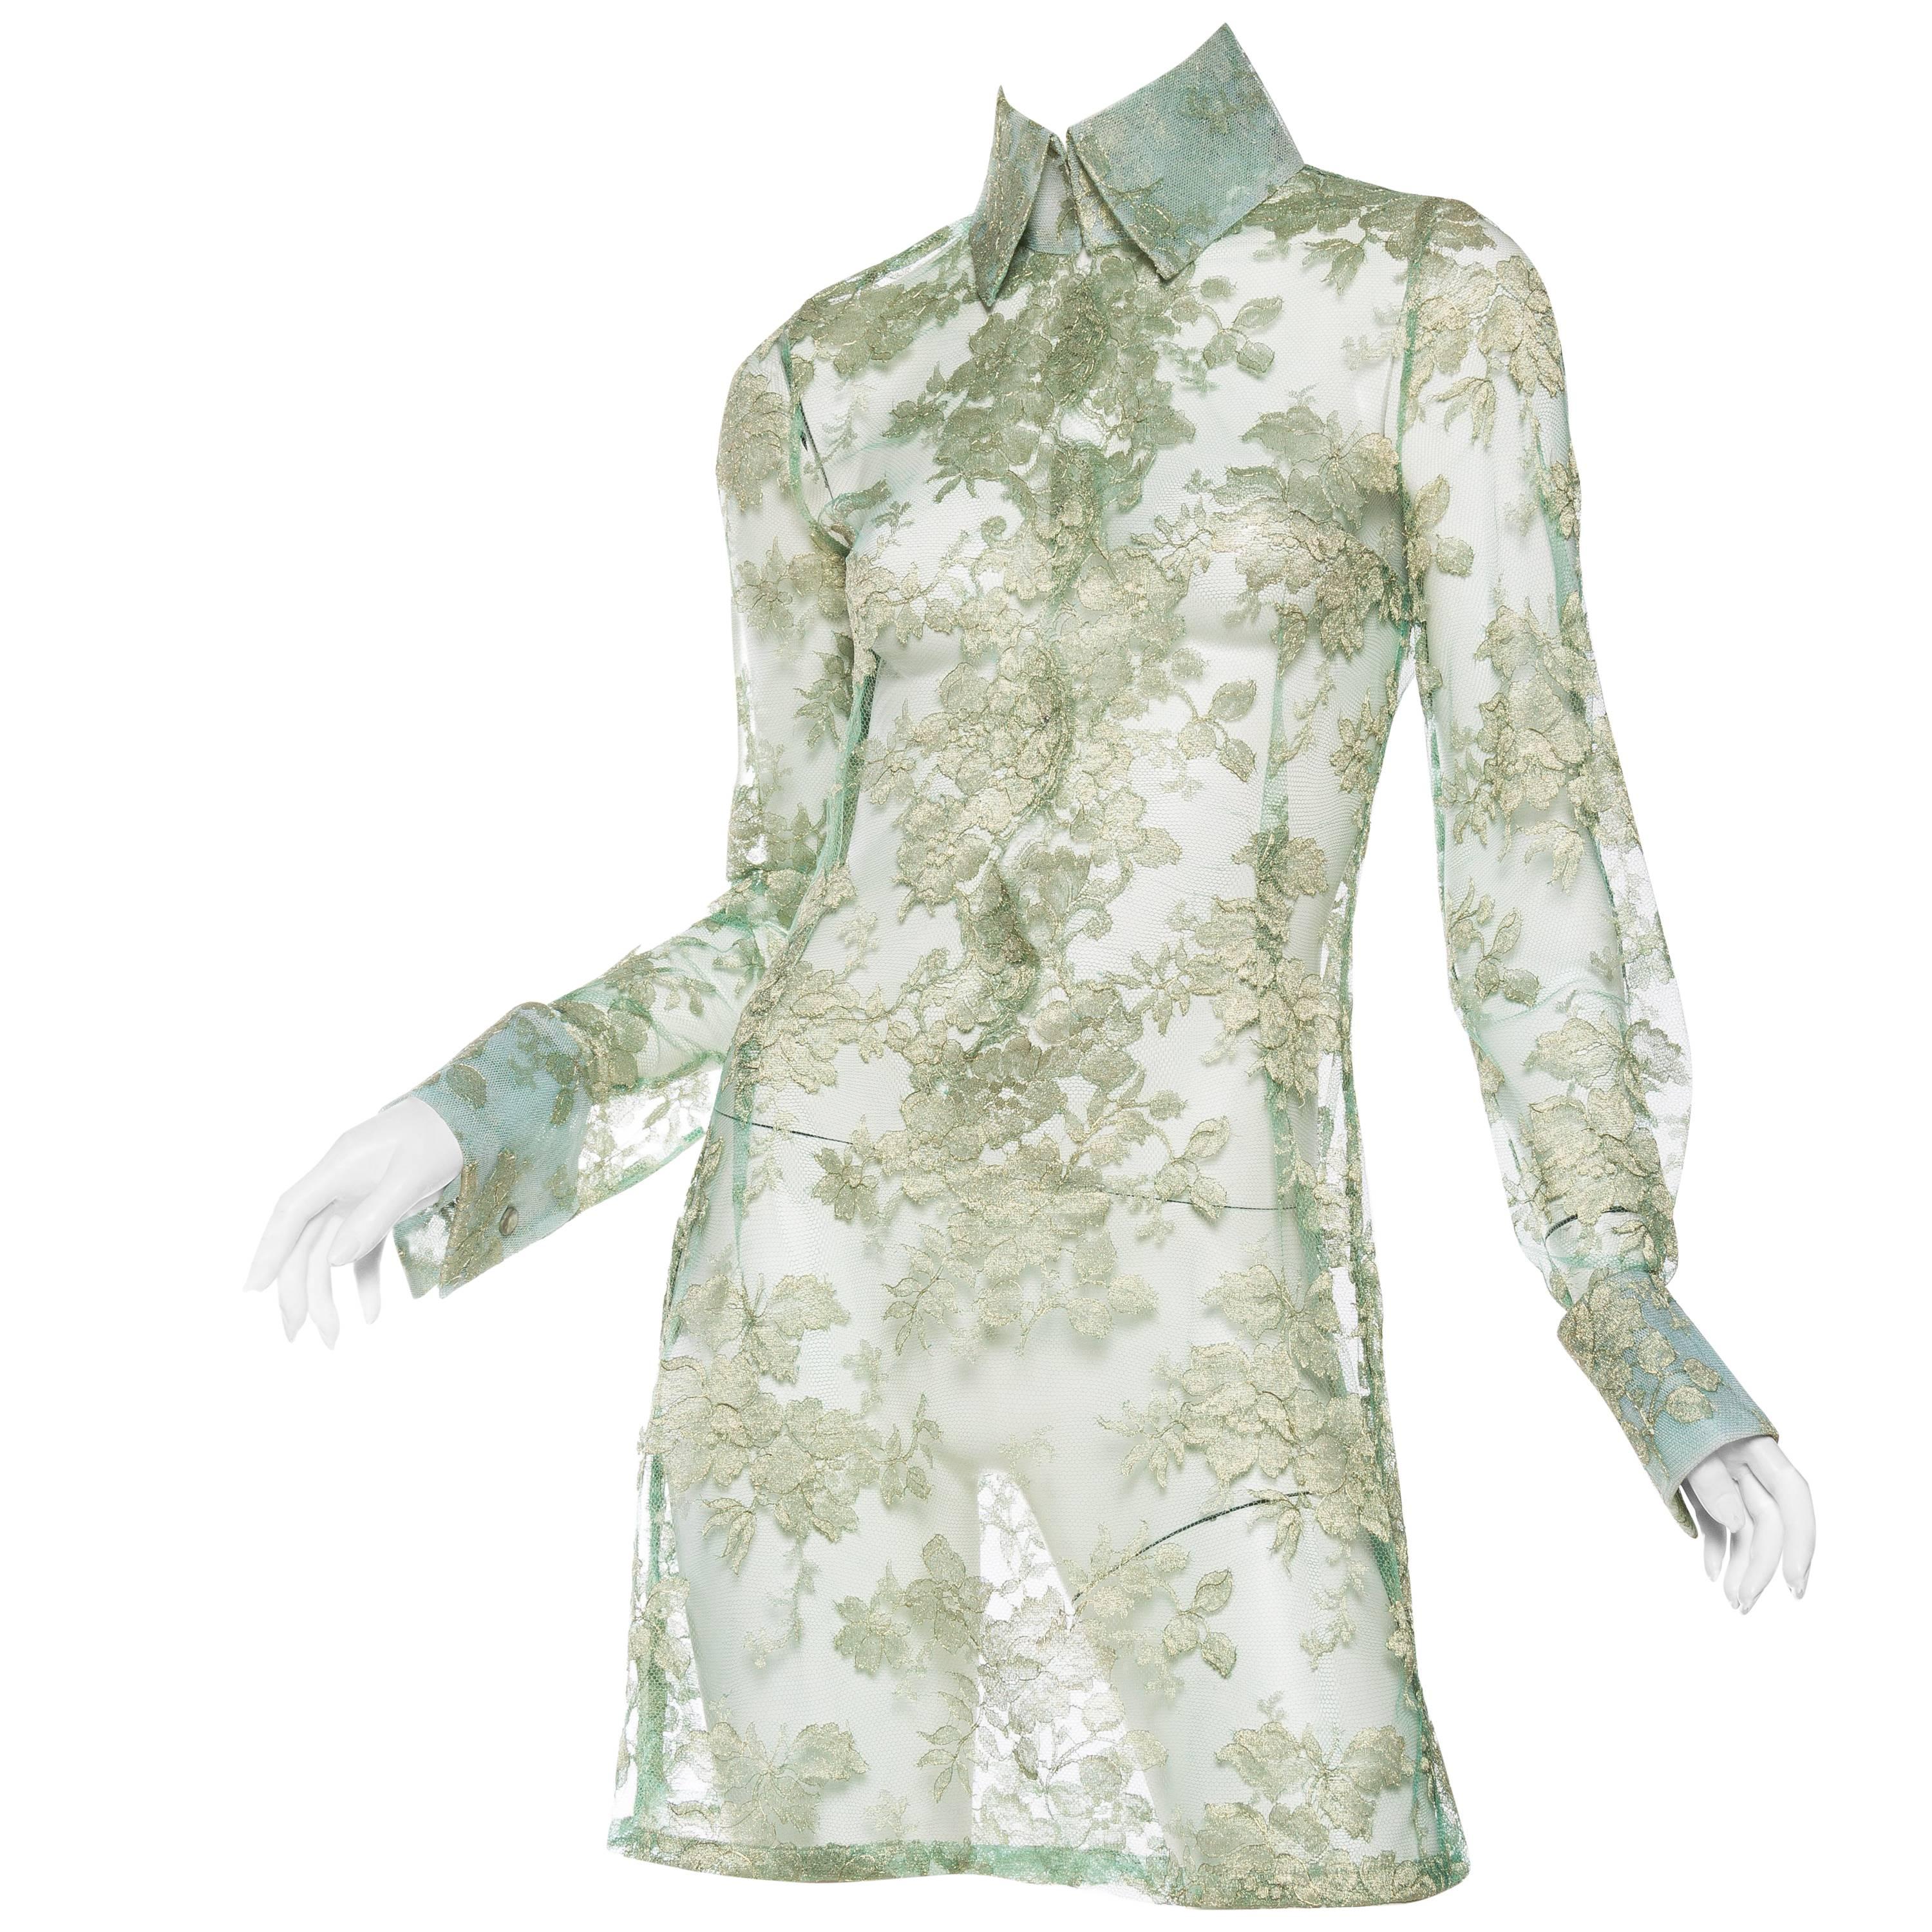 1990S DOLCE & GABBANA Mint Green Sheer Silk Lurex Chantilly Lace Shirt Dress